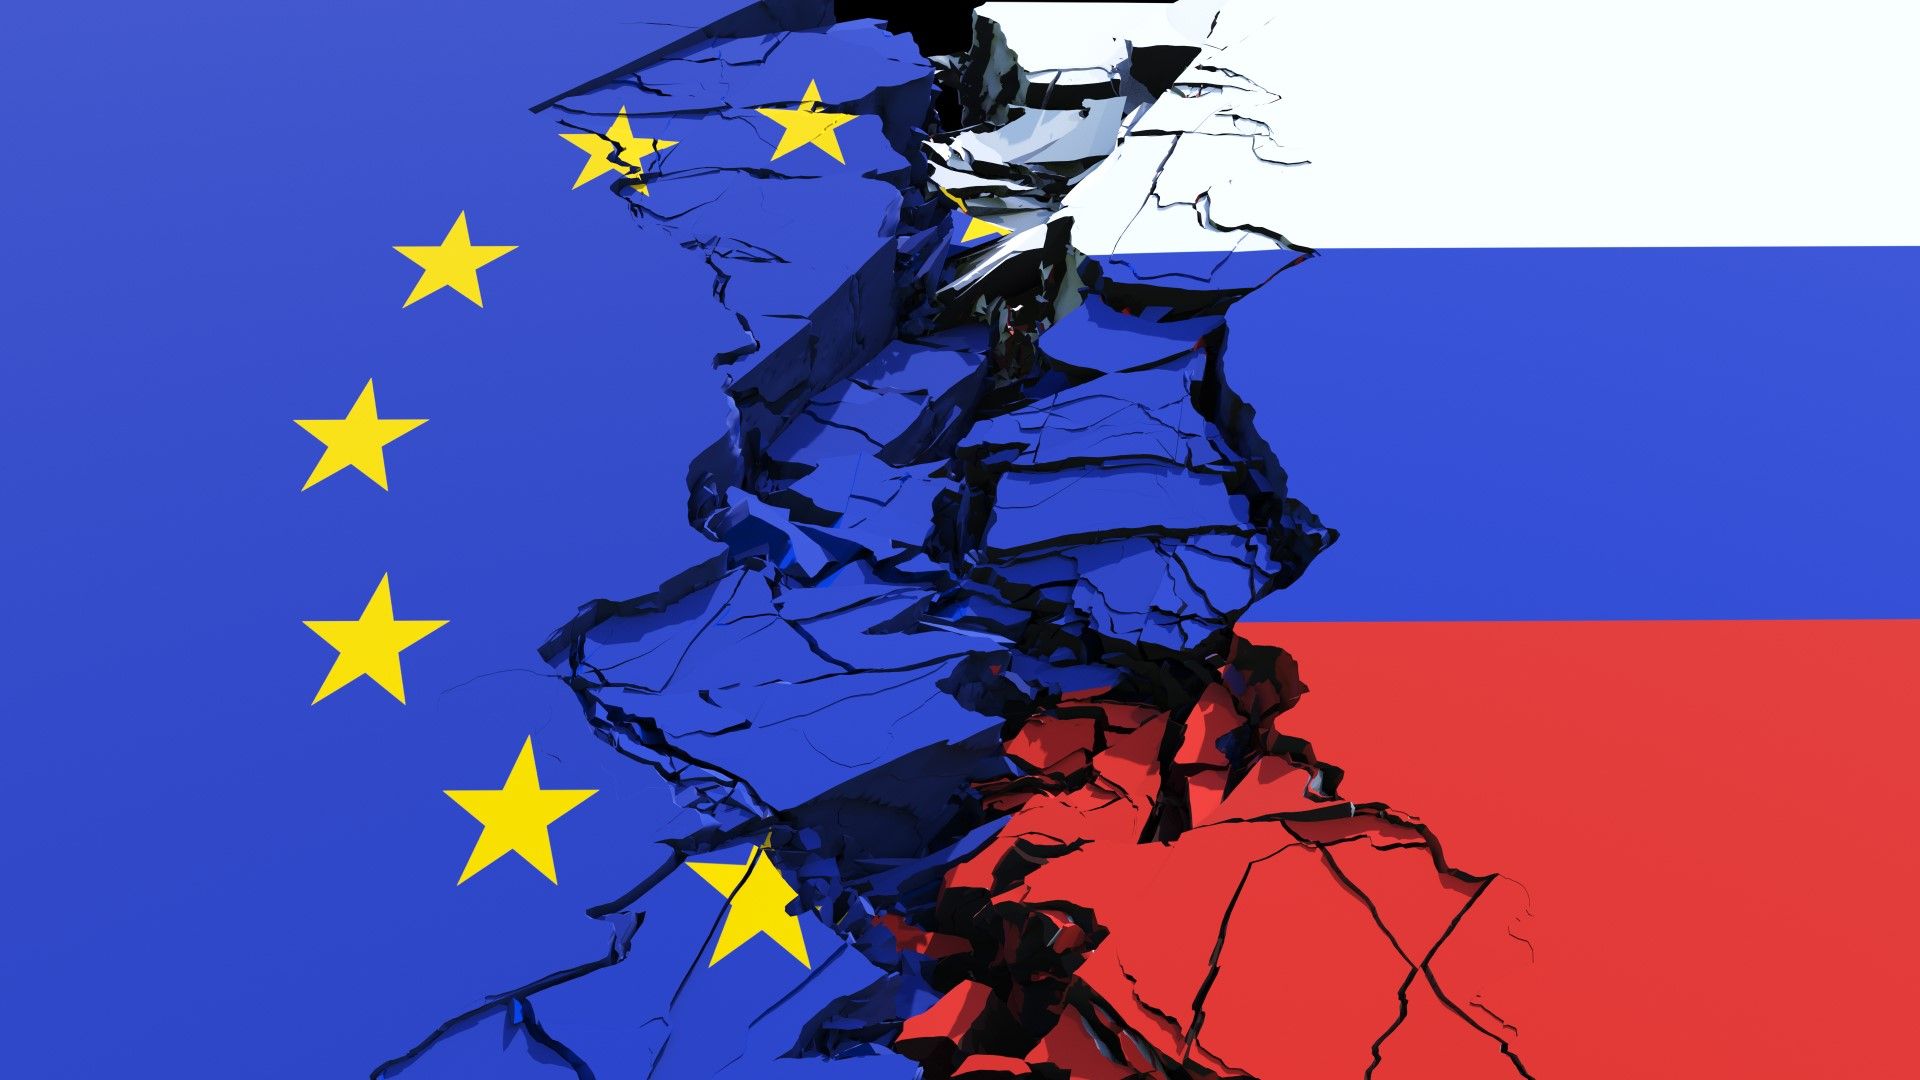 Остра декларация на Русия и забрана на още представители на ЕС да влизат в страната 